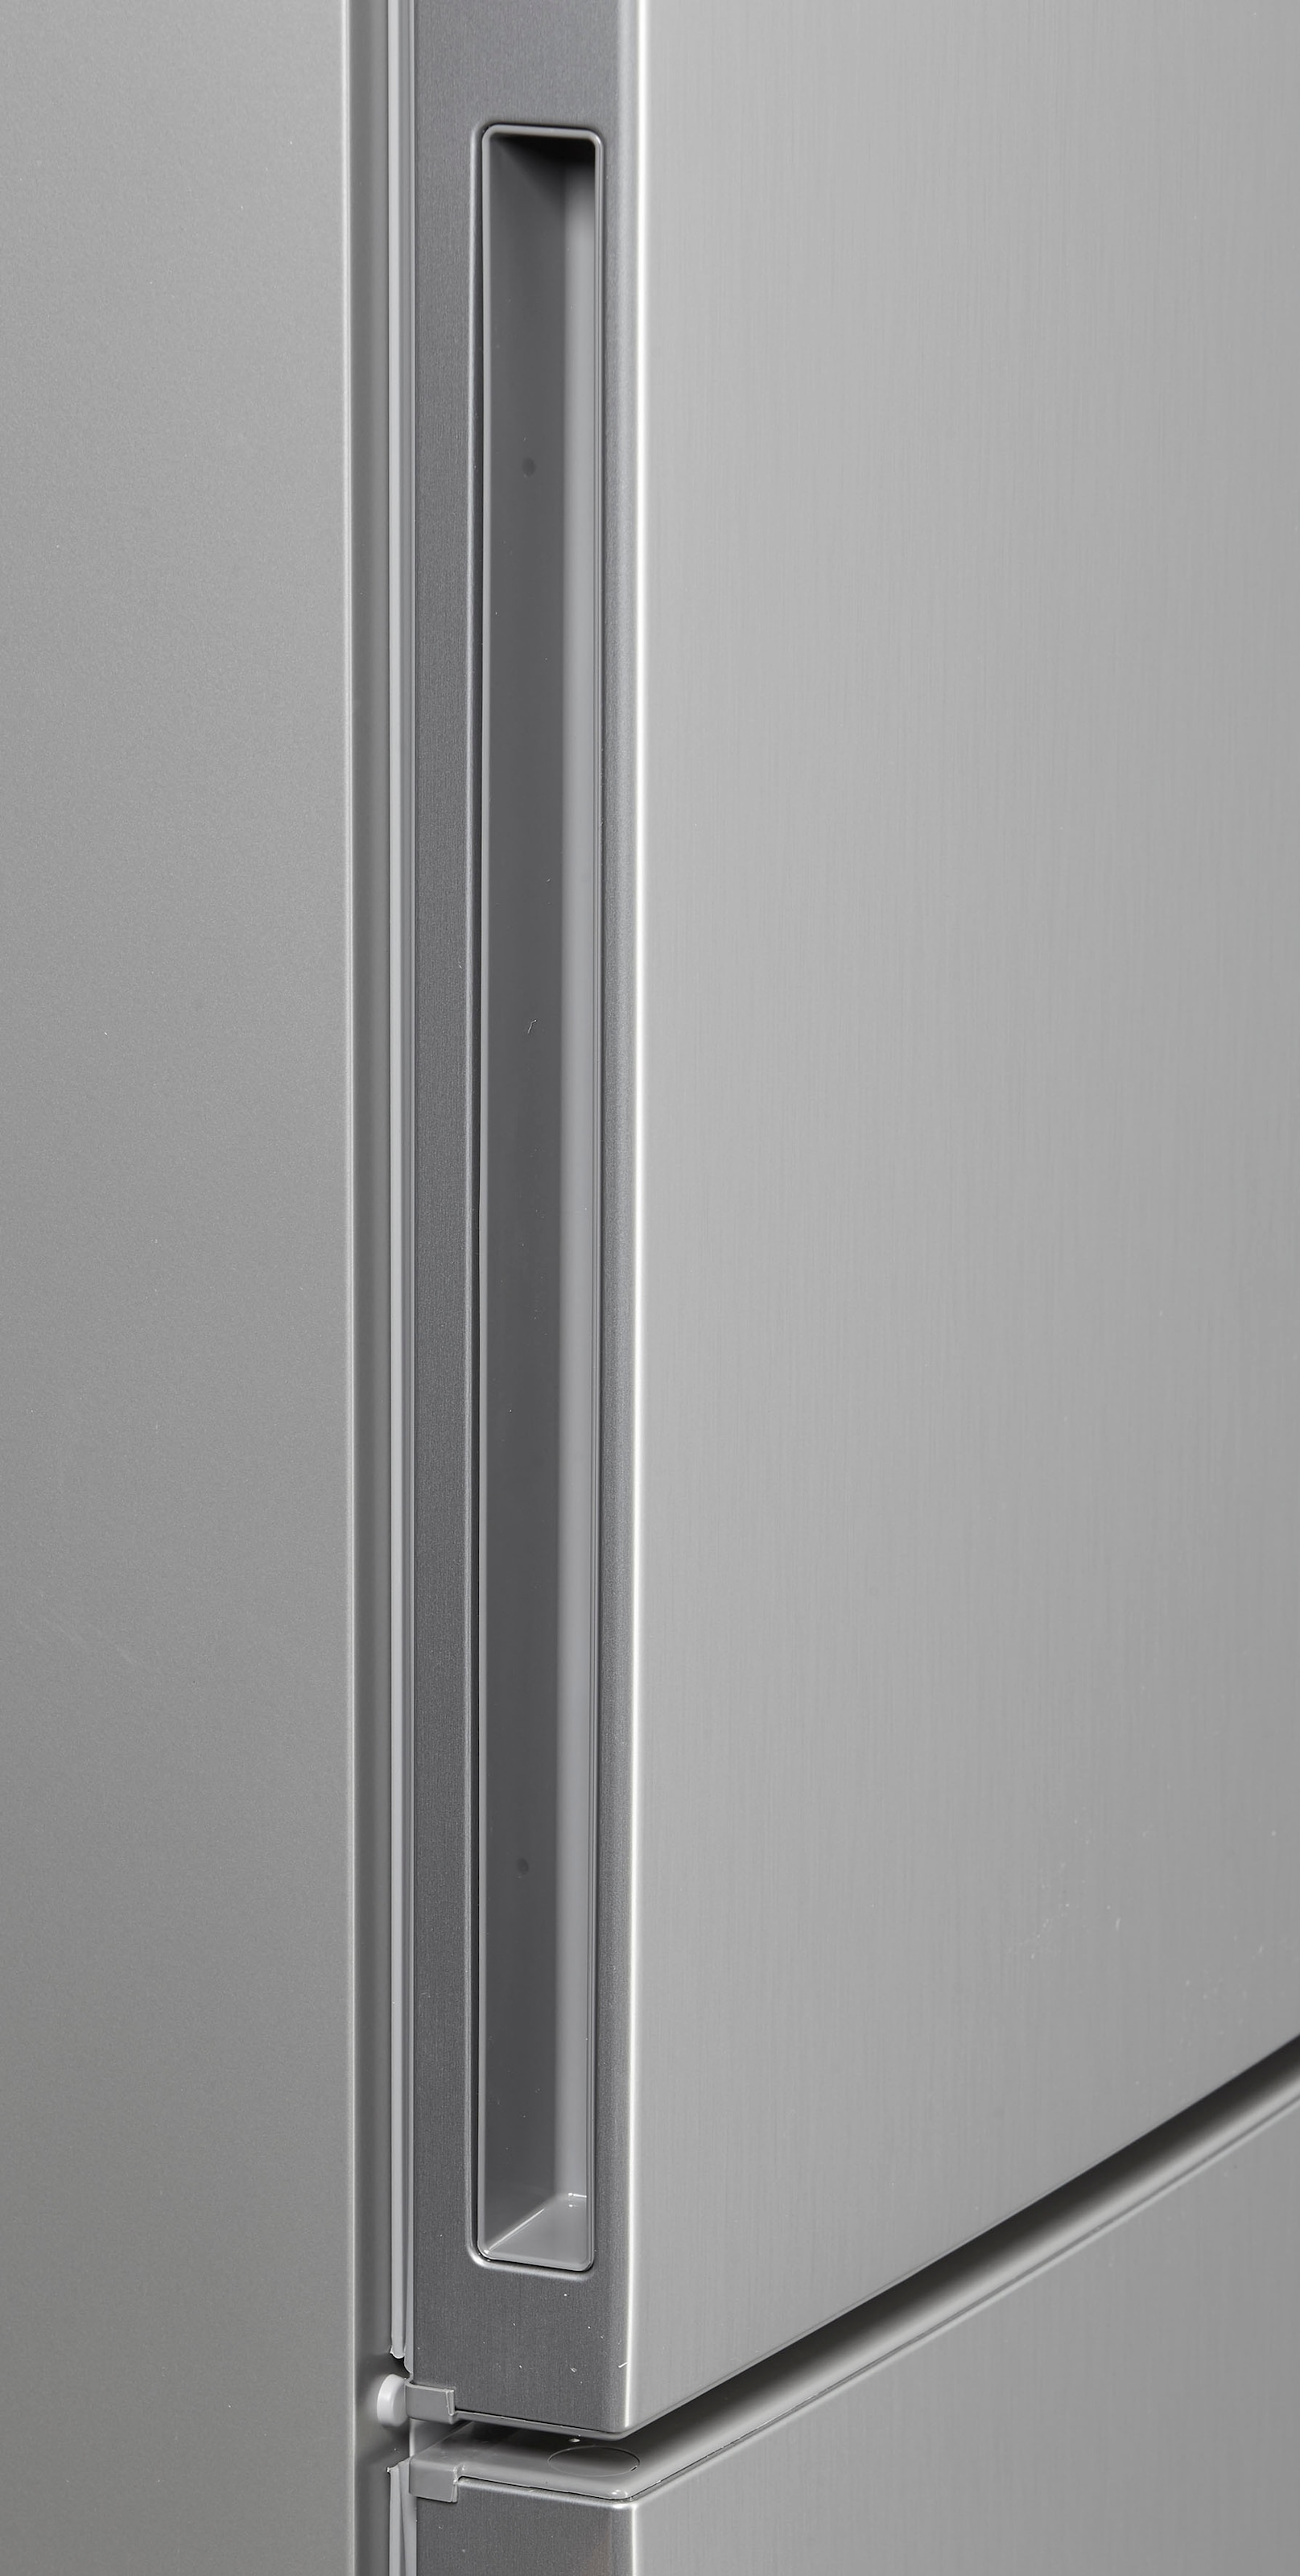 BOSCH Kühl-/Gefrierkombination, KGE36AICA, 186 cm hoch, 60 cm breit